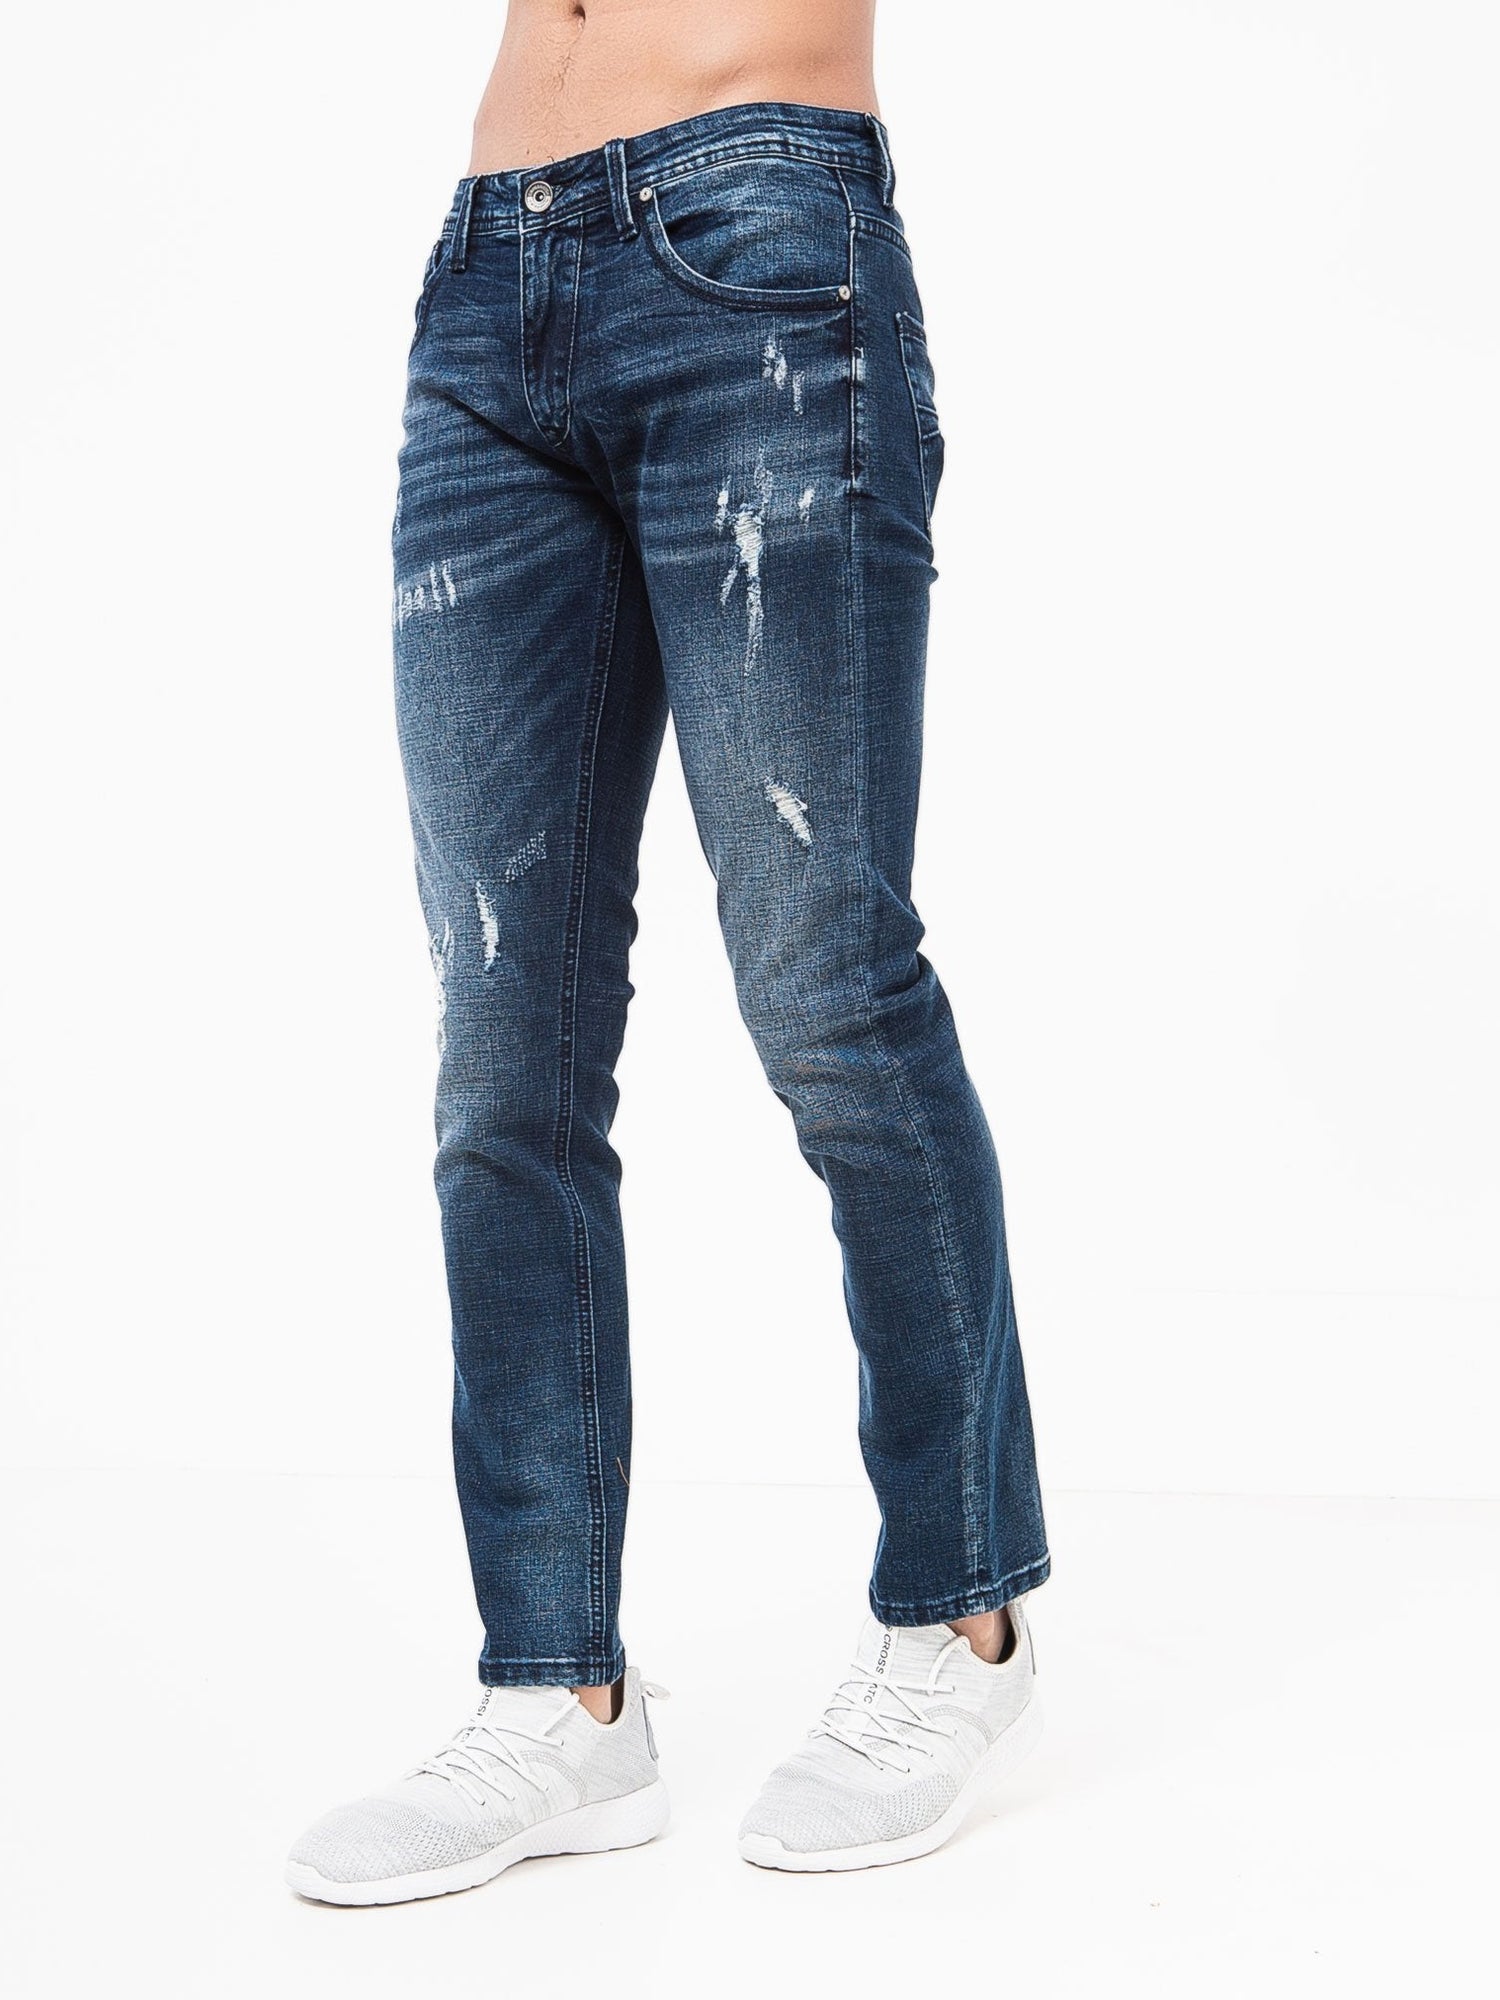 Verbena Jeans W30/l30 / Dark Wash